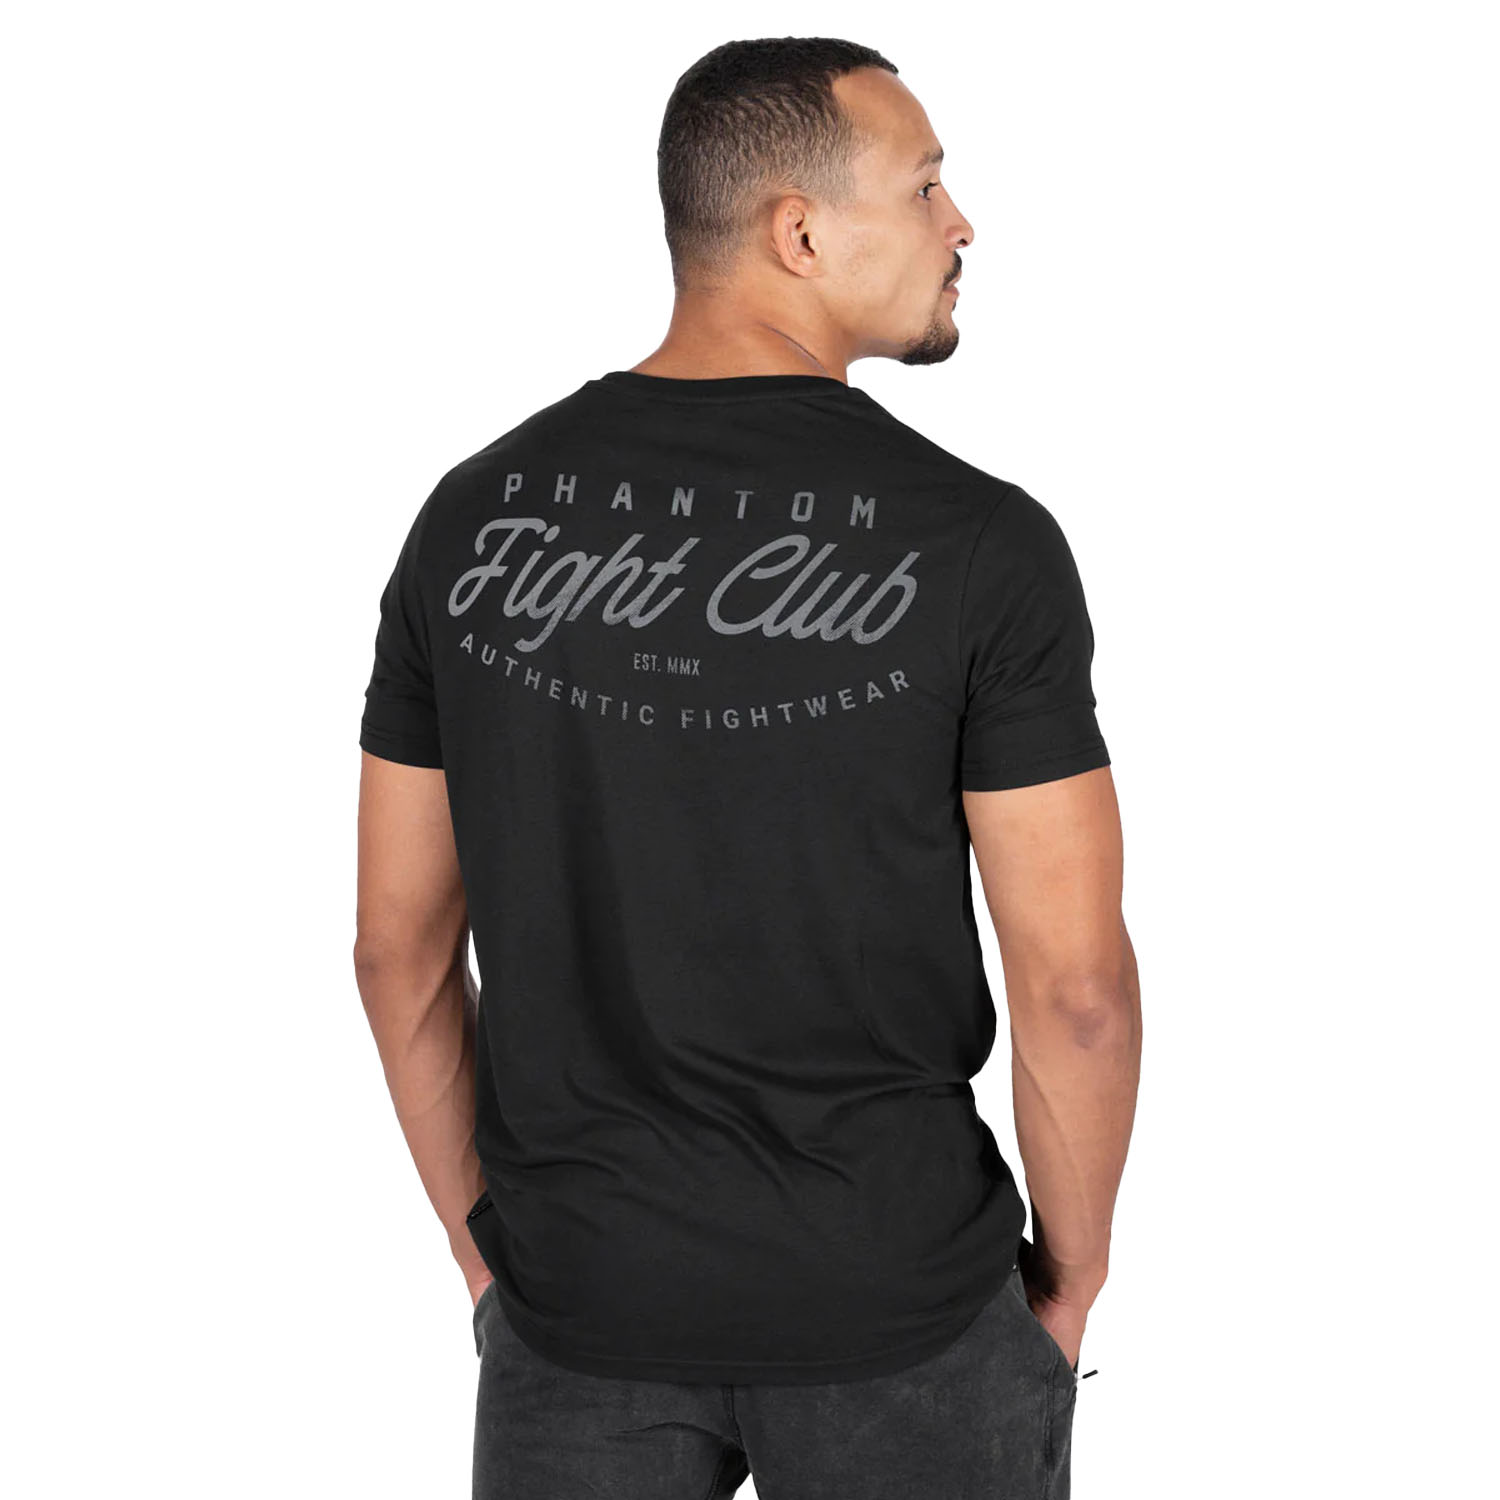 Phantom Athletics T-Shirt, Fight Club, black, M